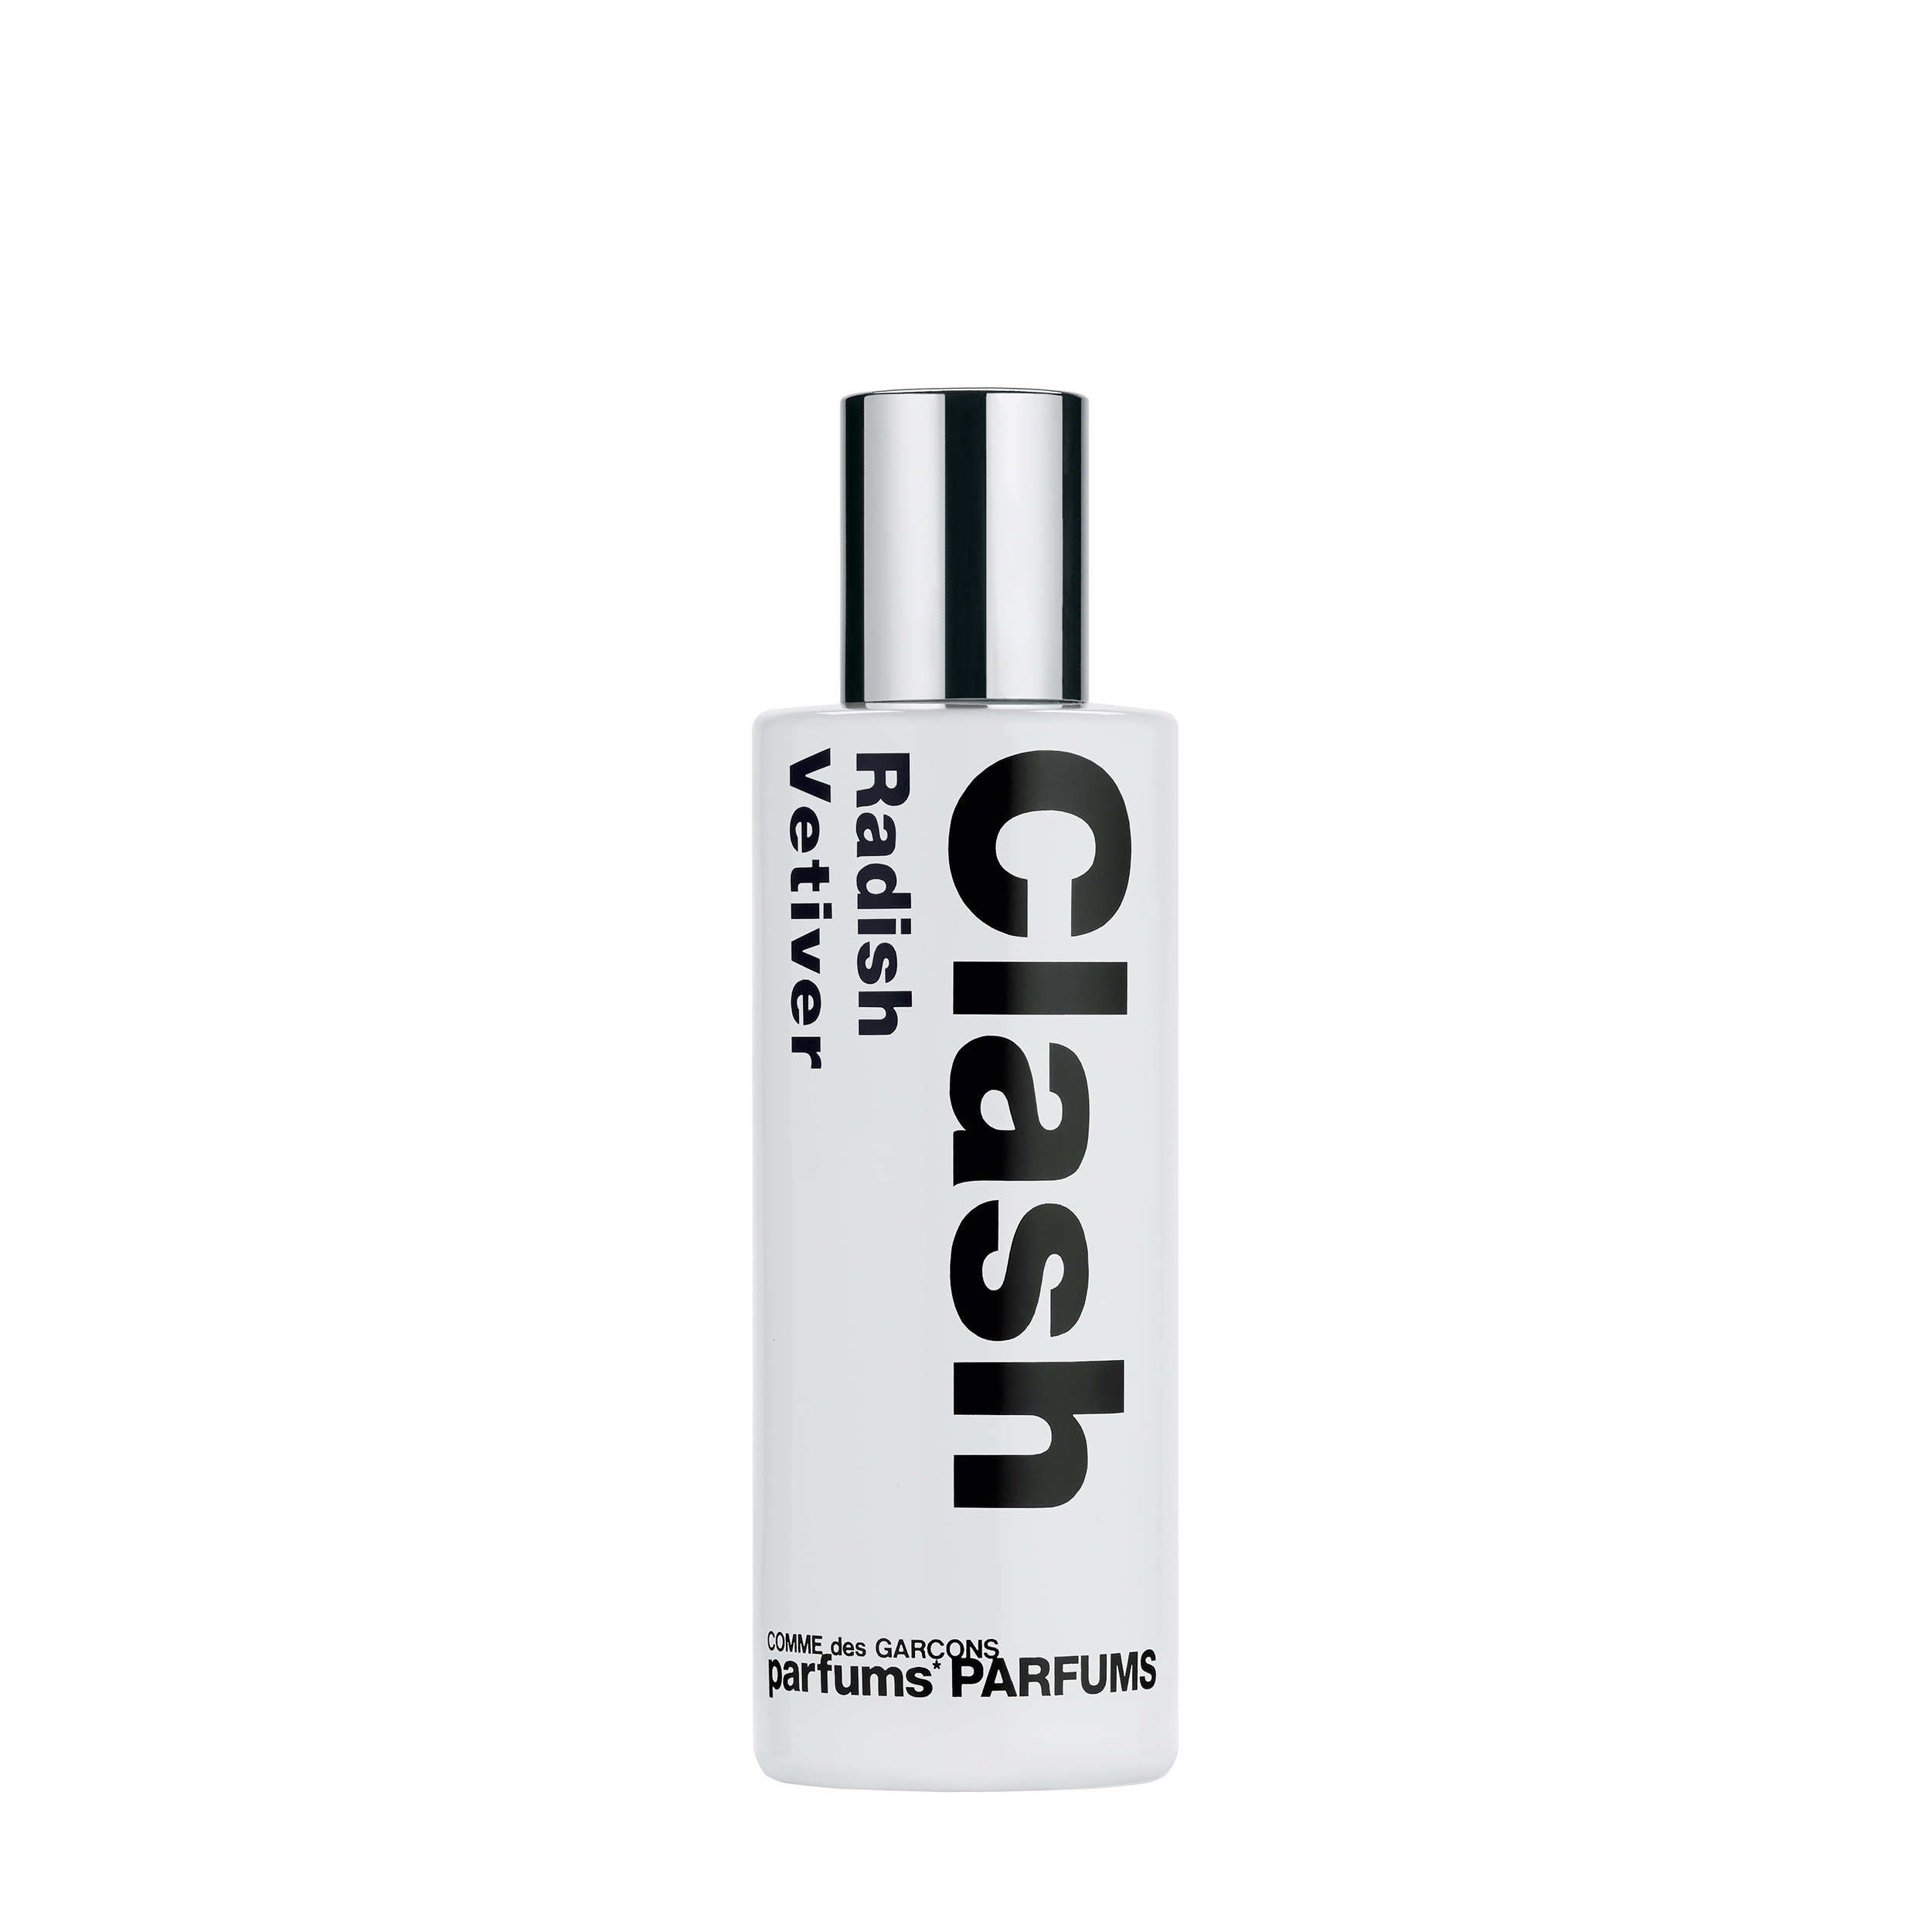 Comme des Garçons Parfums Парфюмерная вода Radish Vetiver из серии Clash